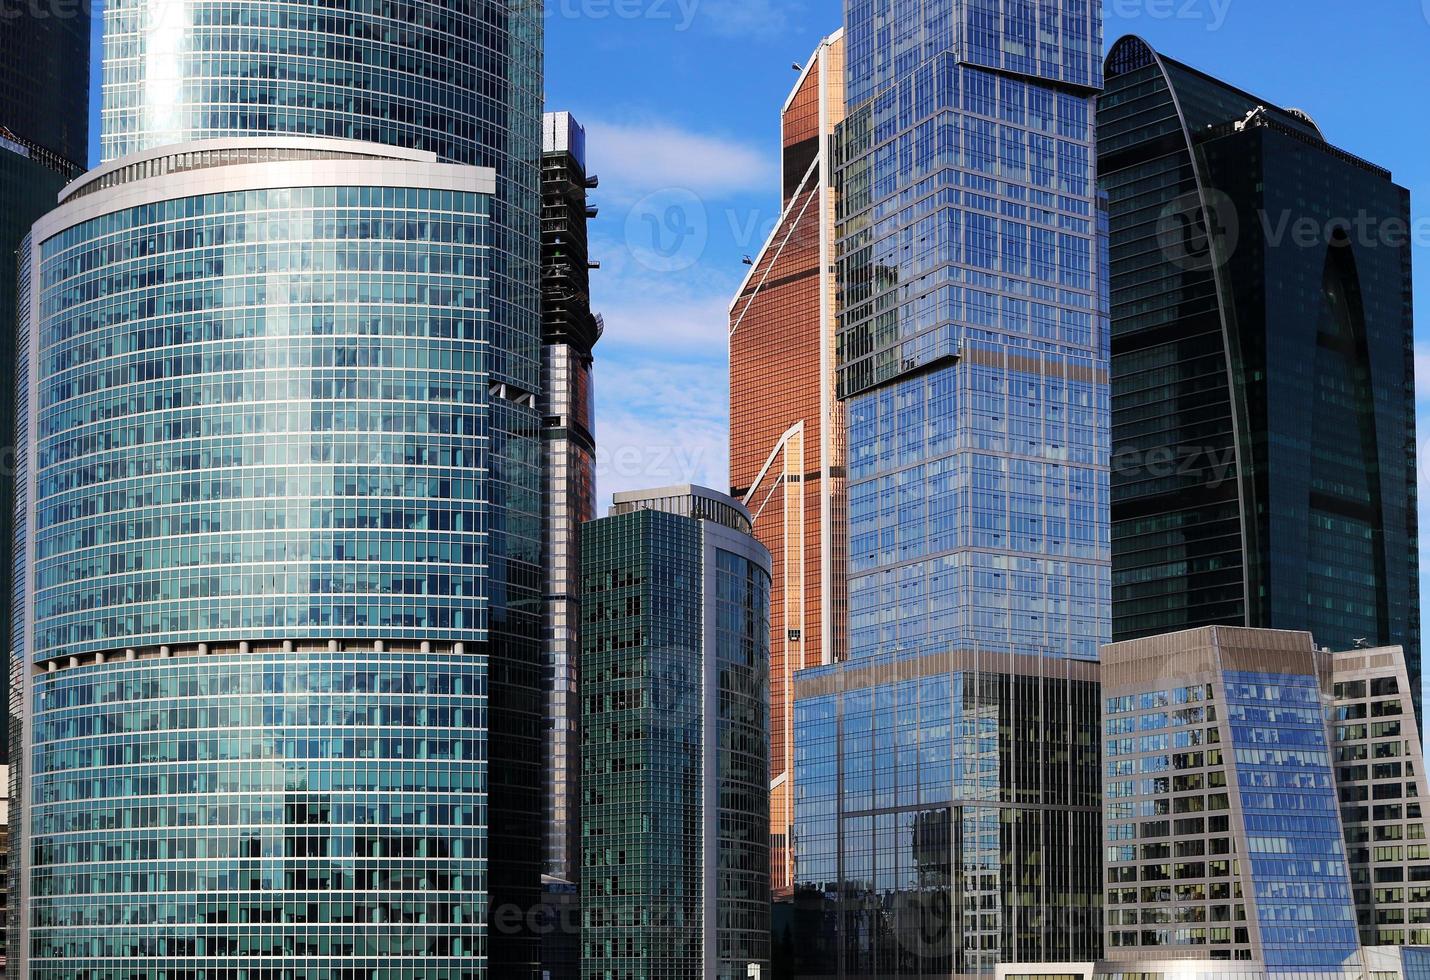 arranha-céus do centro internacional de negócios (cidade), moscou, rússia foto